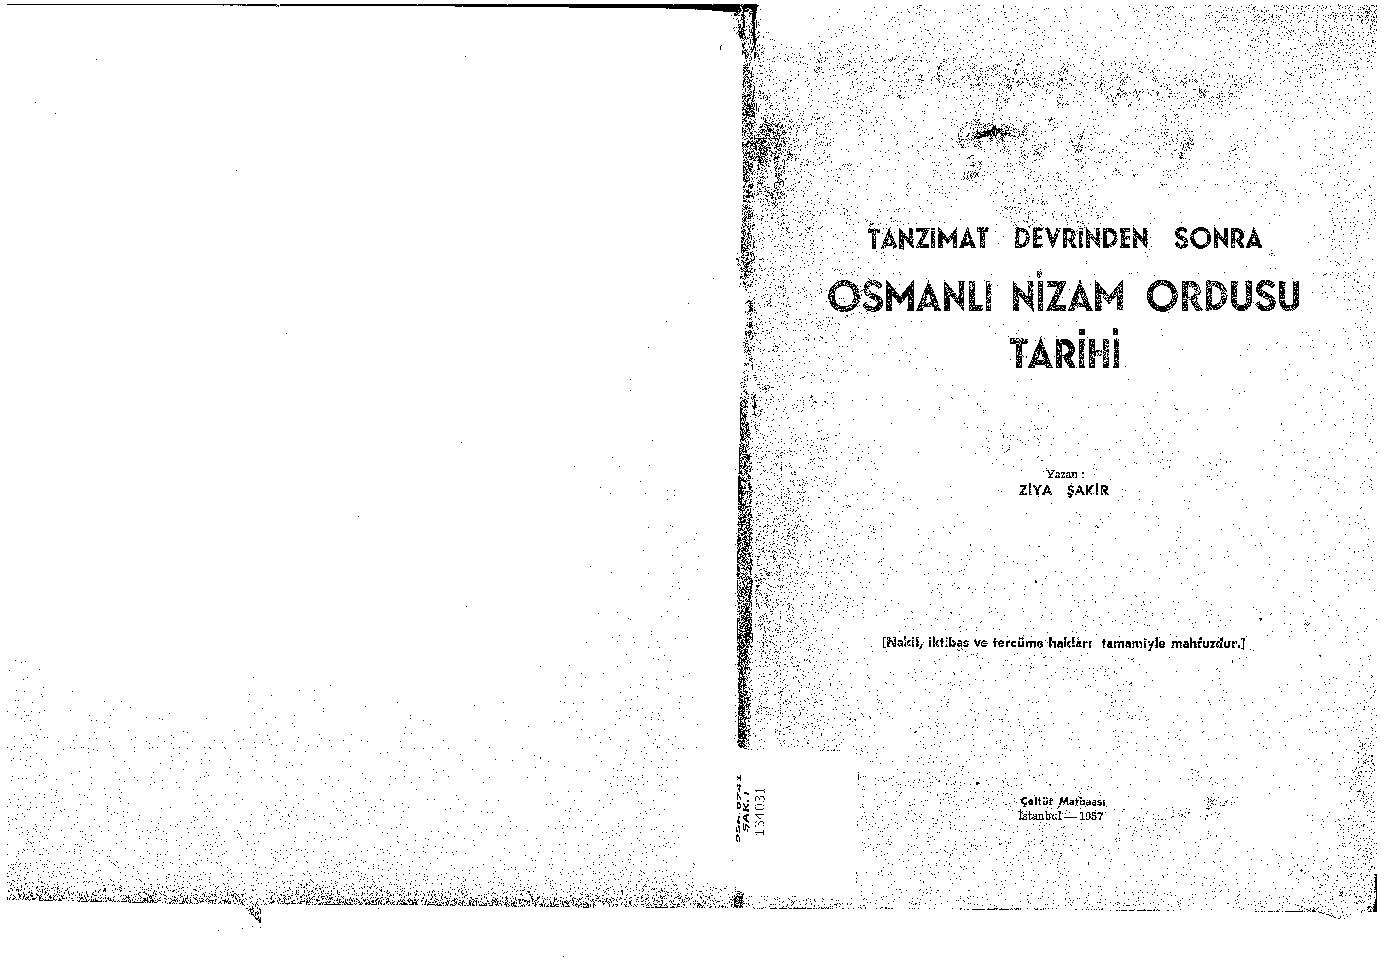 Osmanlı Nizam Ordusu Tarixi-Tanzimat Devrinden Sonra-Ziya Şakir-1957-66s